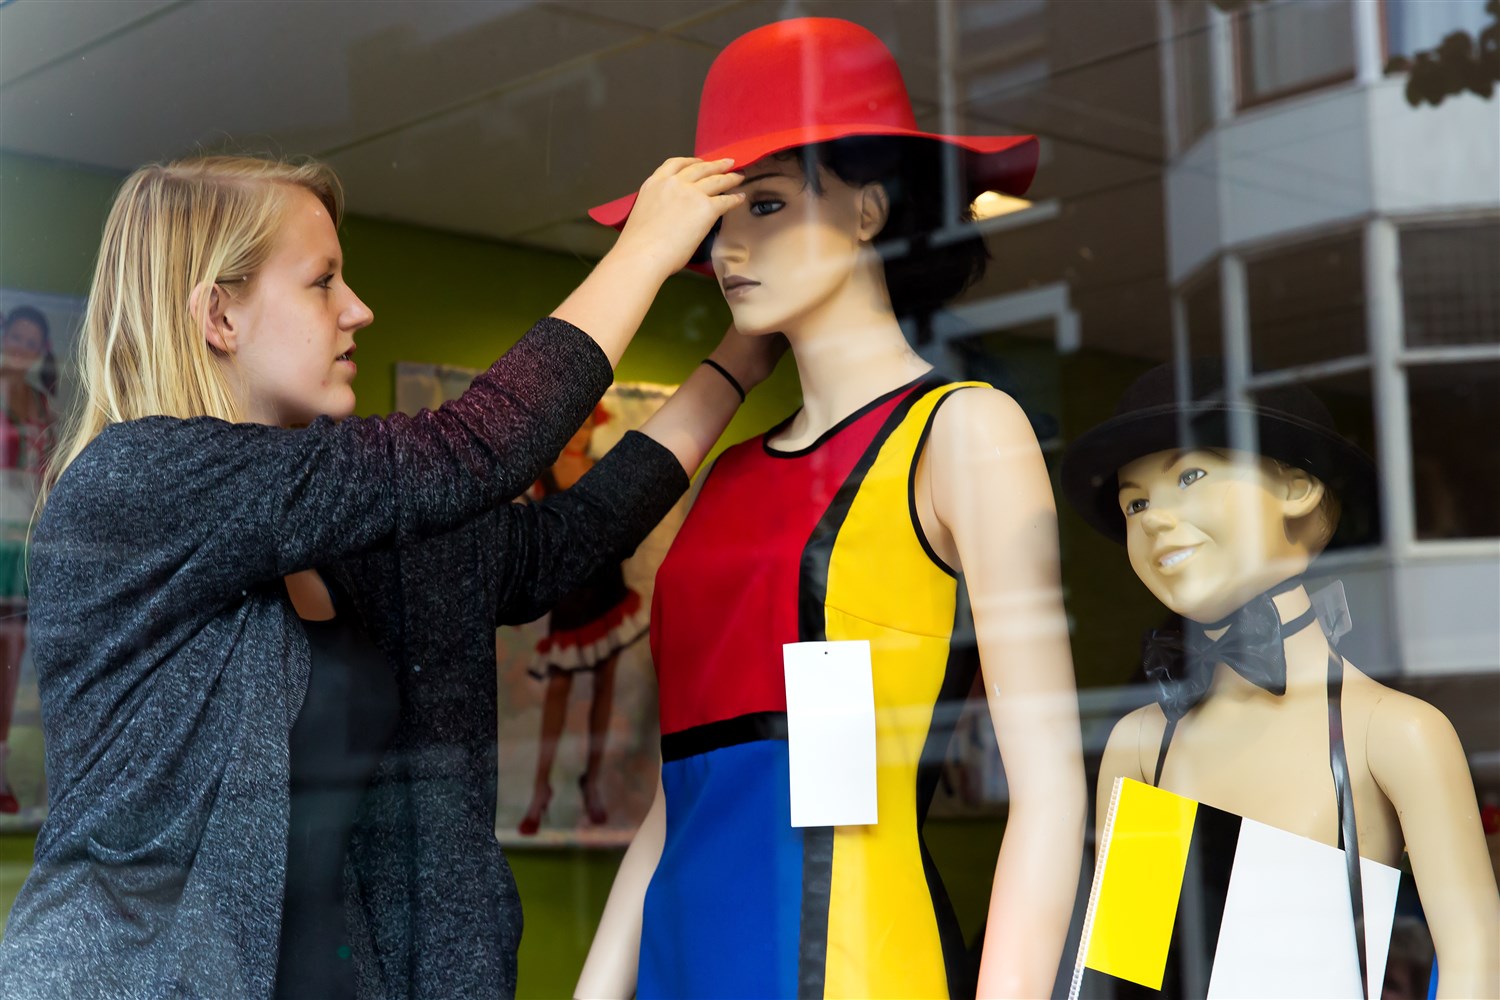 Een jonge, blonde vrouwe zet een rode hoed op een etalagepop die gekleed is in een mondriaan, mouwloos jurkje.